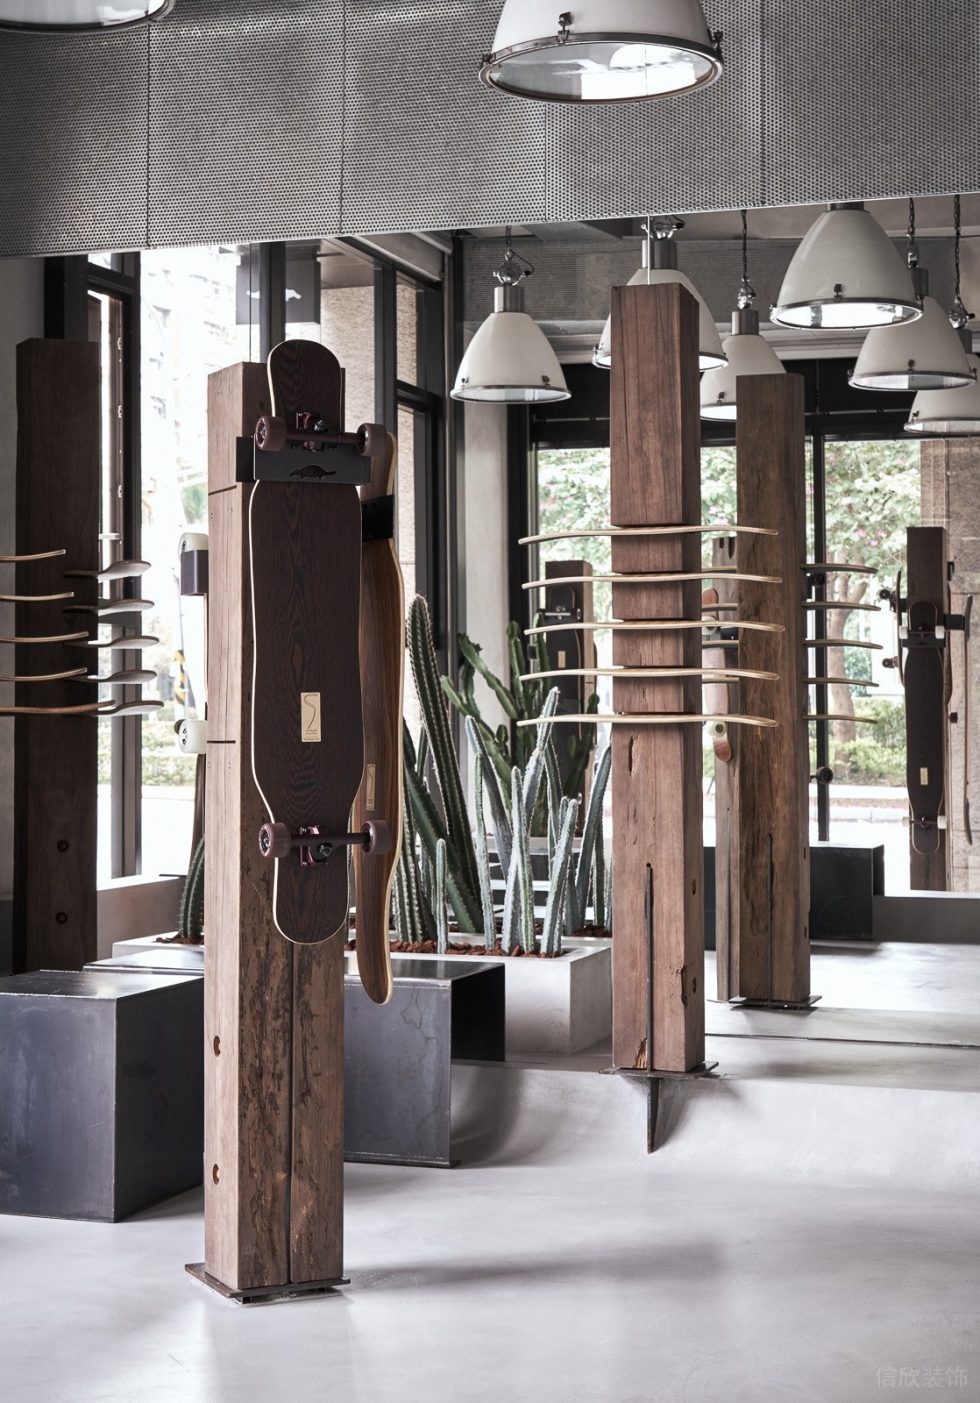 深圳市龙华区民治維也納滑板品牌概念店装修设计实木柱子展架